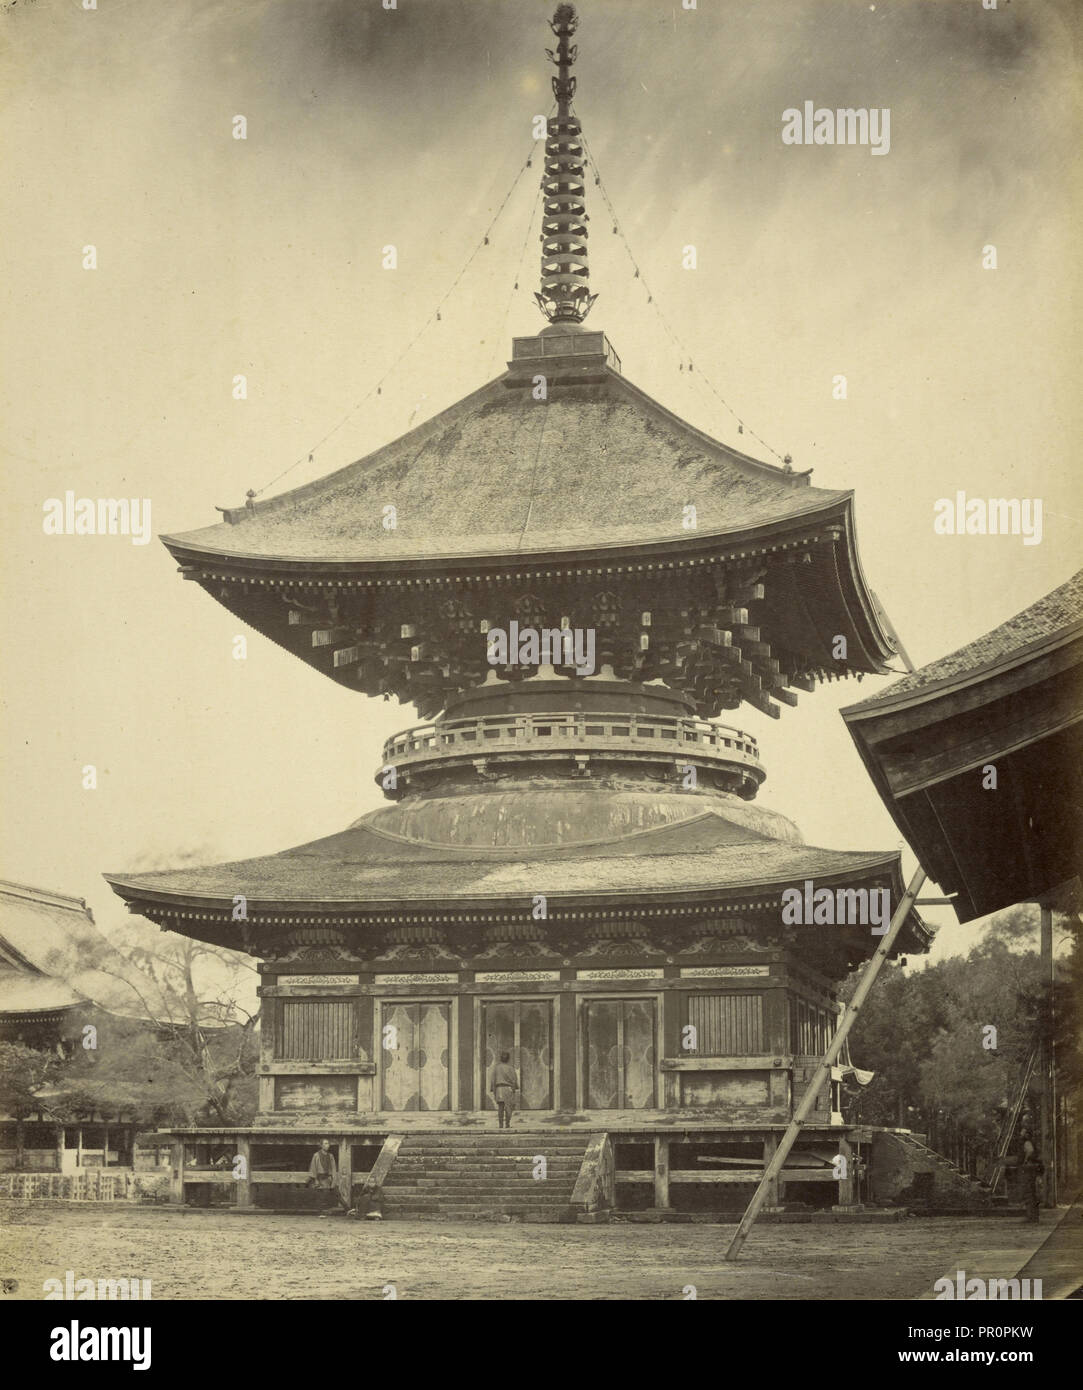 1-stöckige Pagode, Hachiman Schrein, Kamakura; Felice Beato, 1832 - 1909, Kamakura, Japan; 1867 - 1868 Stockfoto